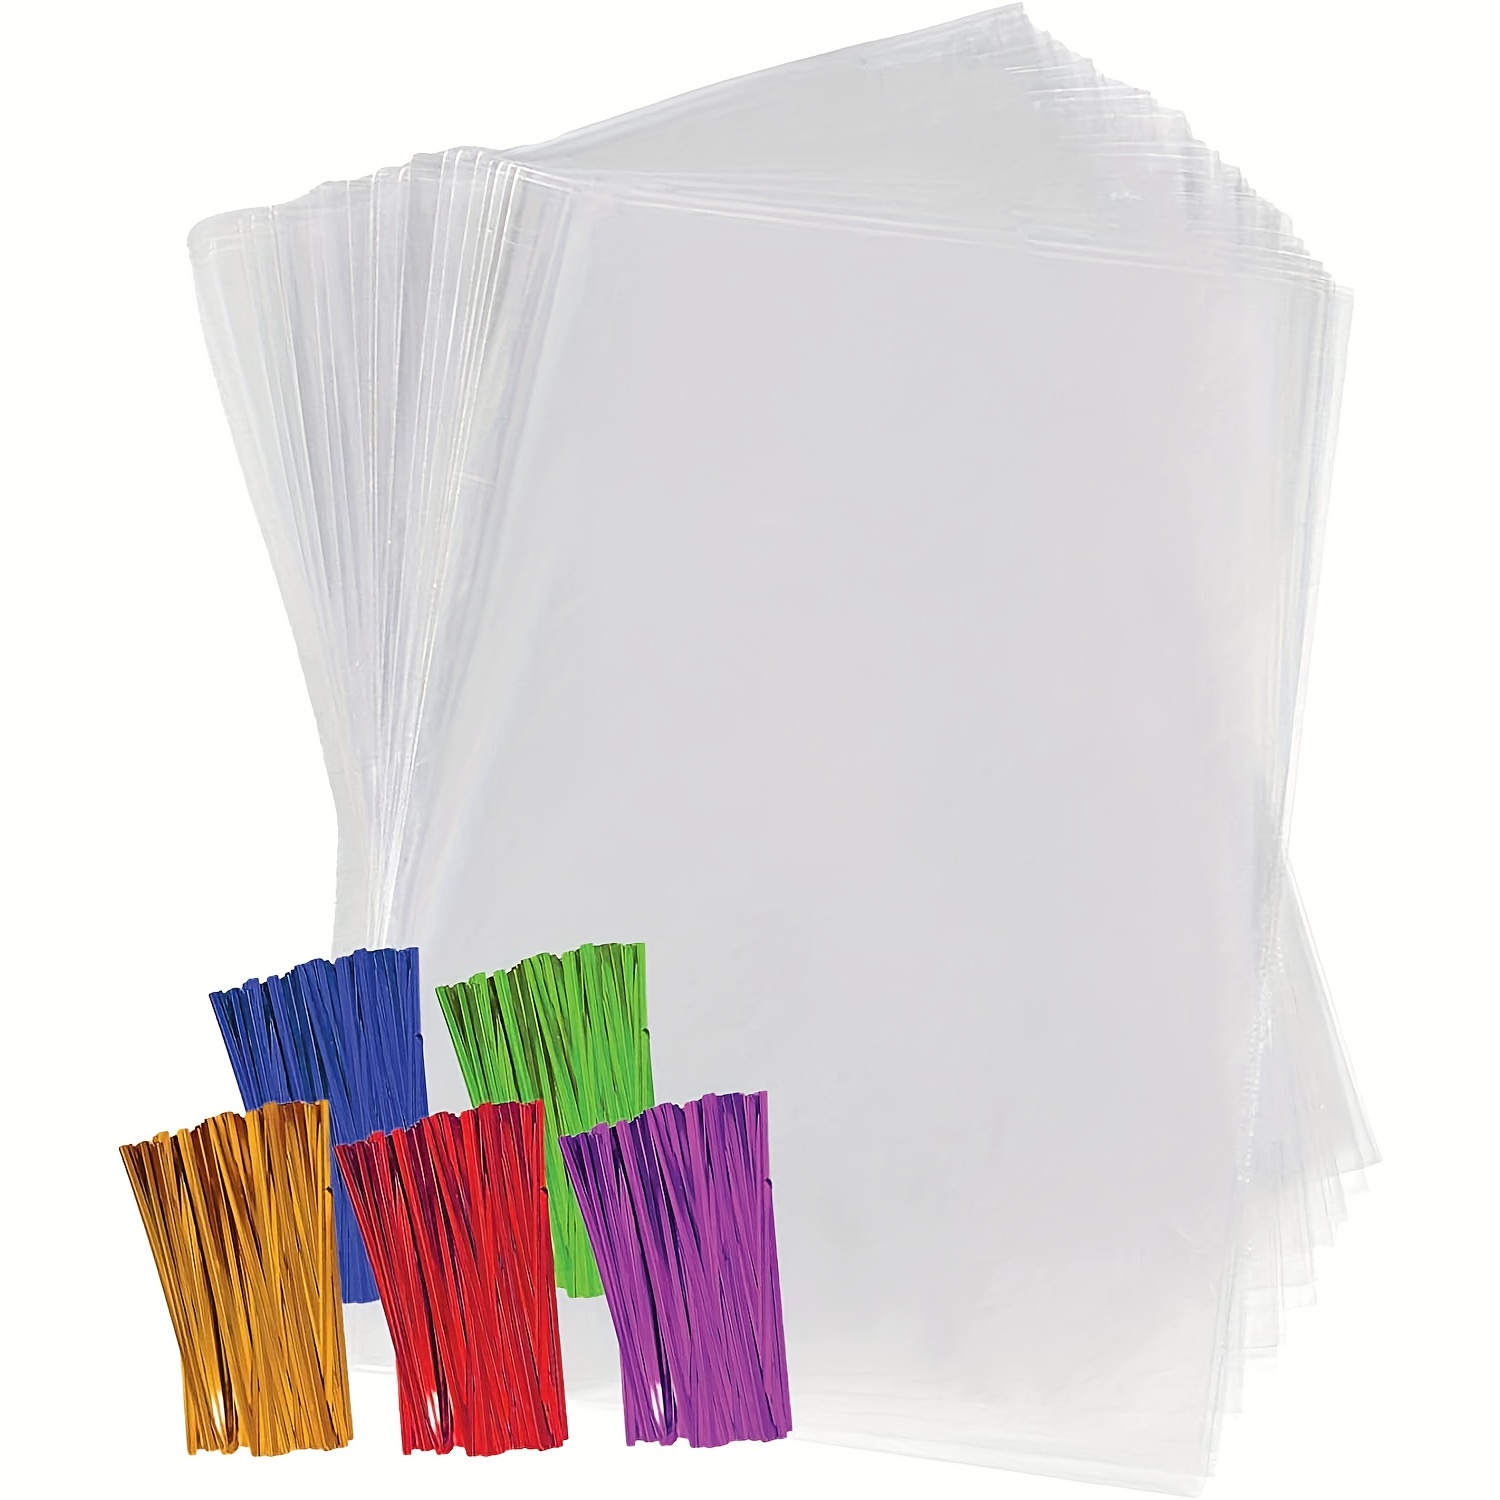 150 bolsas de celofán transparente de 5-1/2 pulgadas x 7-1/2 pulgadas,  fundas gruesas de plástico para tarjetas de felicitación, para tarjetas de  5 x